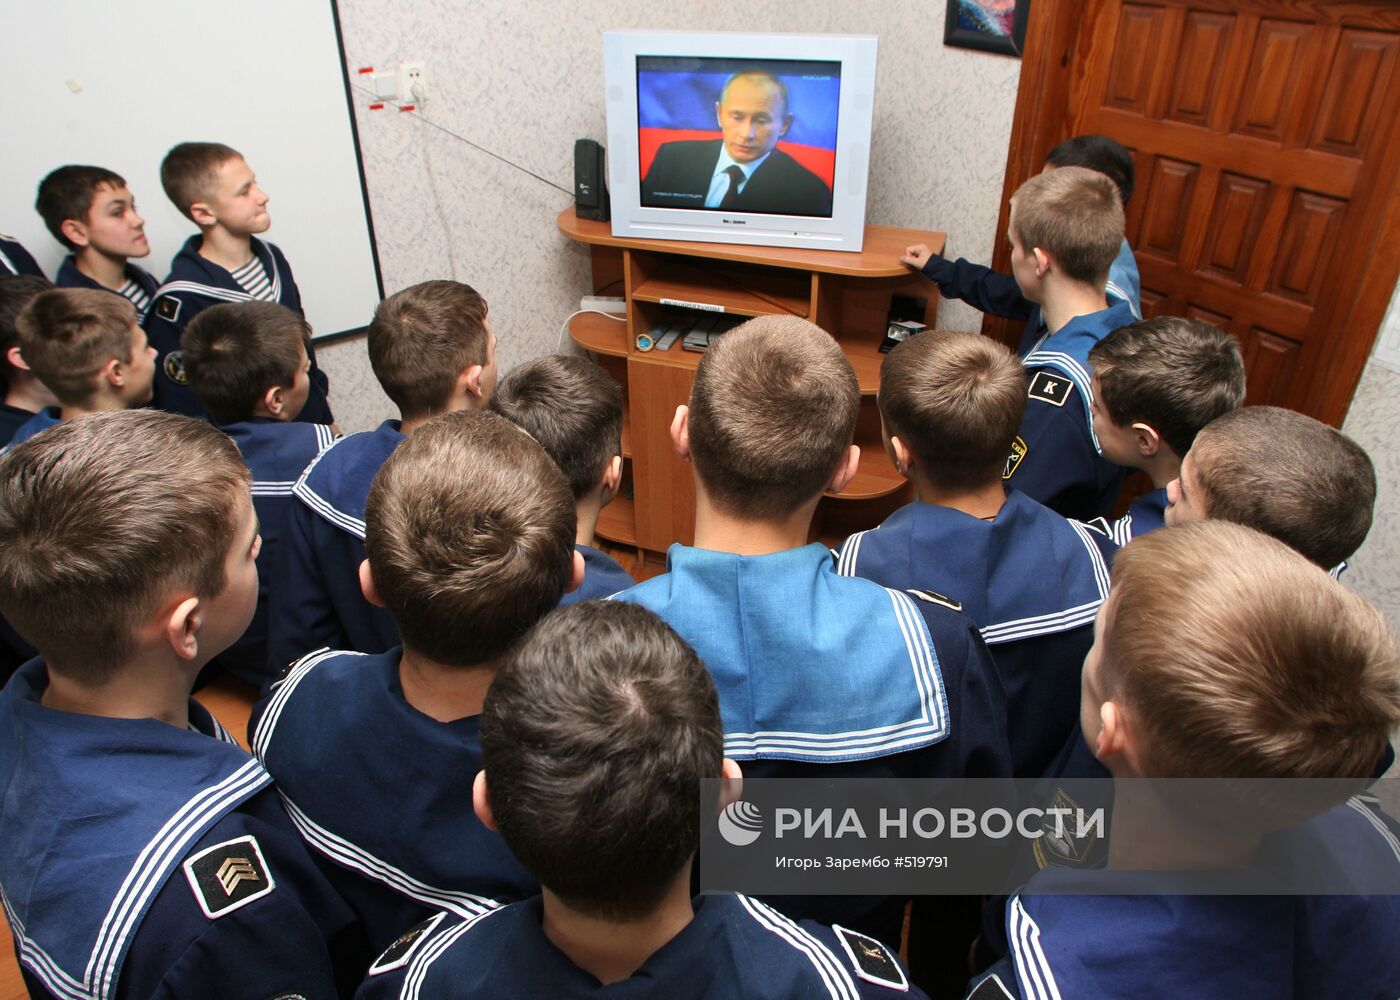 Трансляция "прямой линии" с Владимиром Путиным